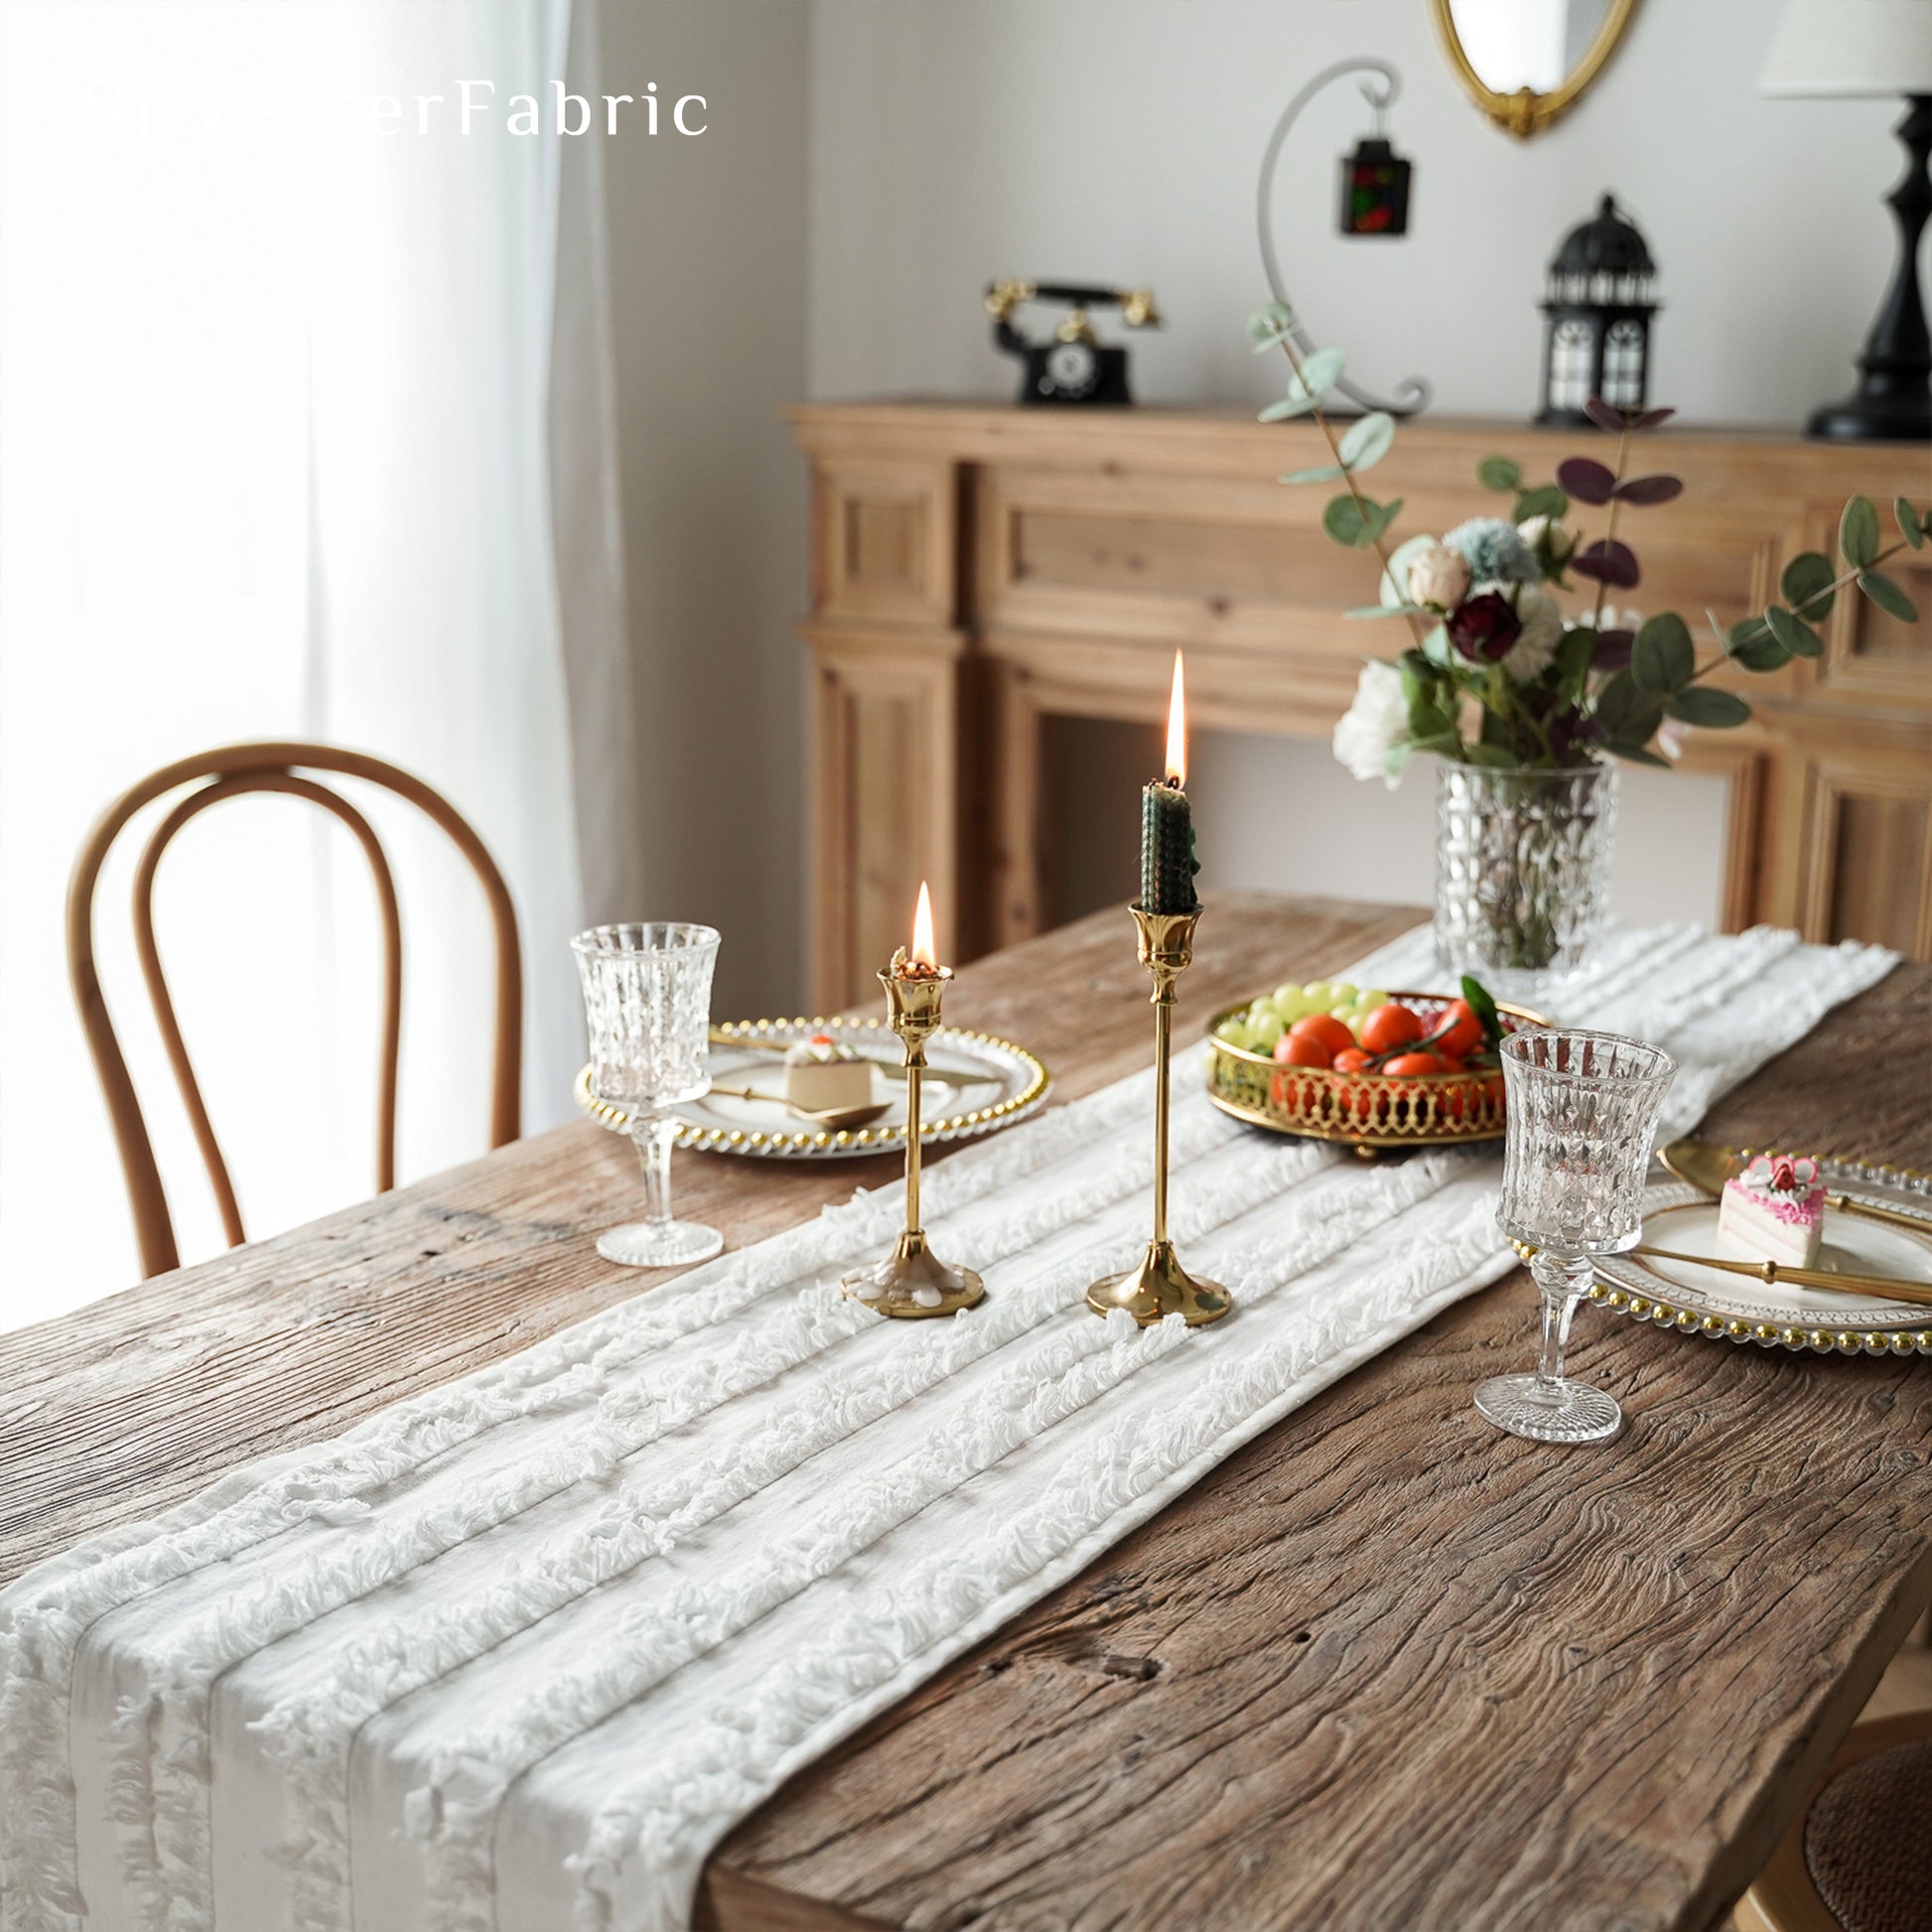 White Table Runner丨Grey Table Runner - Silvester Fabric